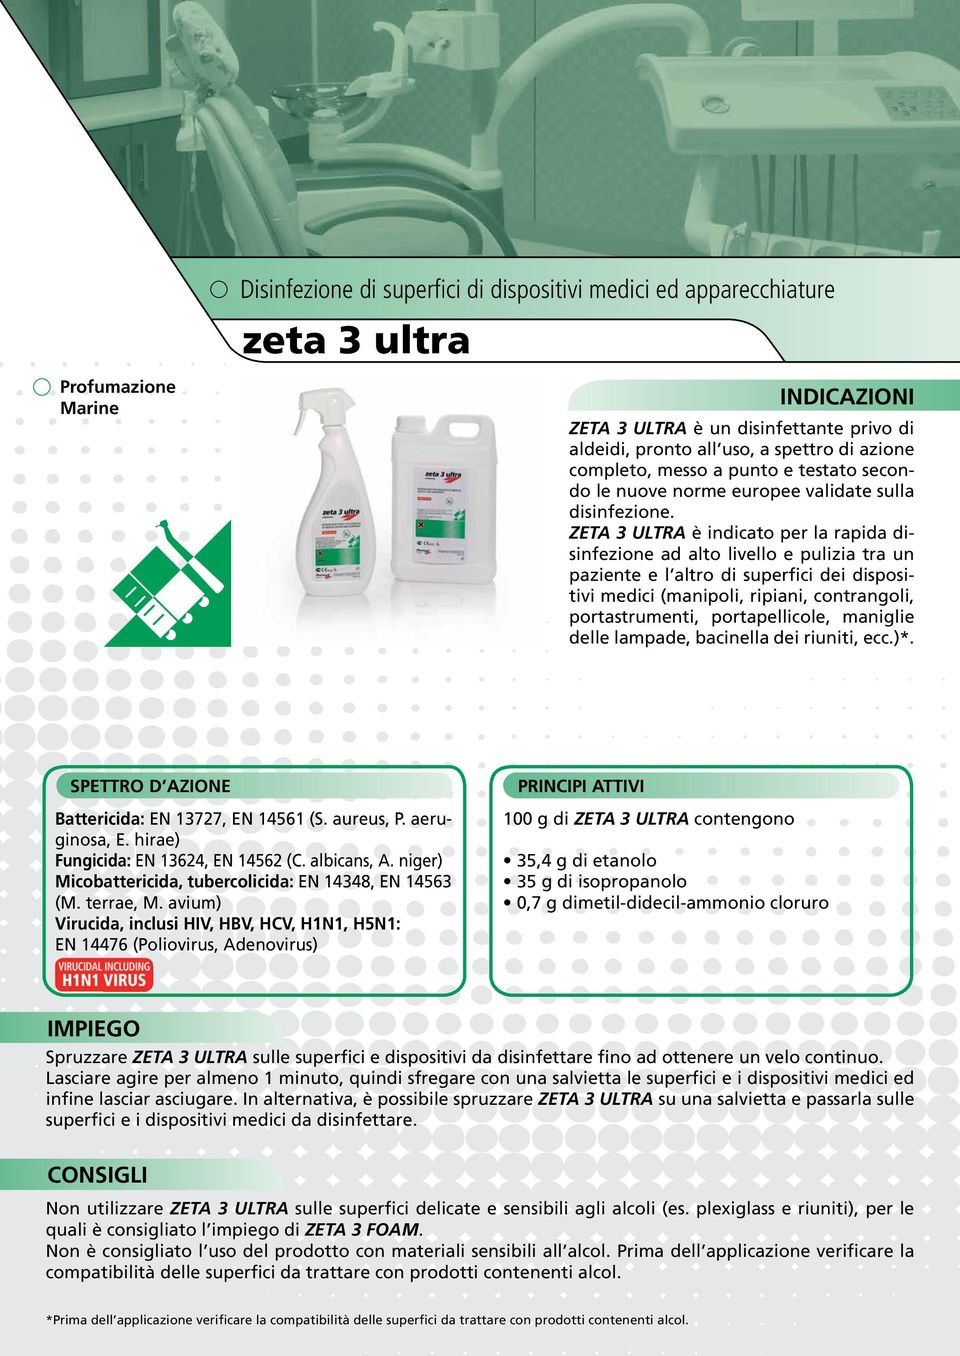 ZETA 3 ULTRA è indicato per la rapida disinfezione ad alto livello e pulizia tra un paziente e l altro di superfici dei dispositivi medici (manipoli, ripiani, contrangoli, portastrumenti,